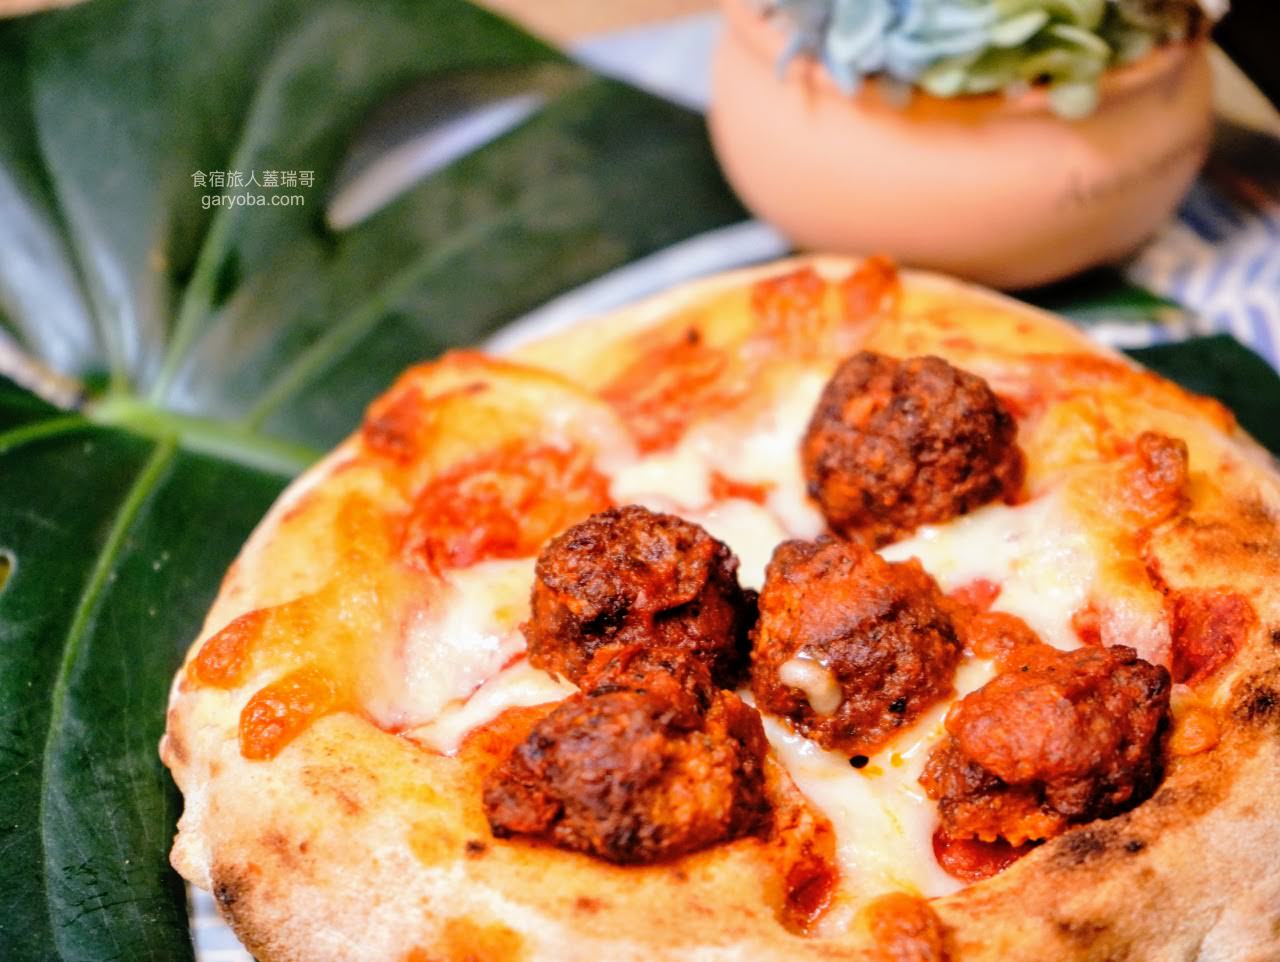 瑪咖朵披薩 Mercato Pizza 宅配到家好滋味！雲朵披薩在家也能輕鬆品嚐